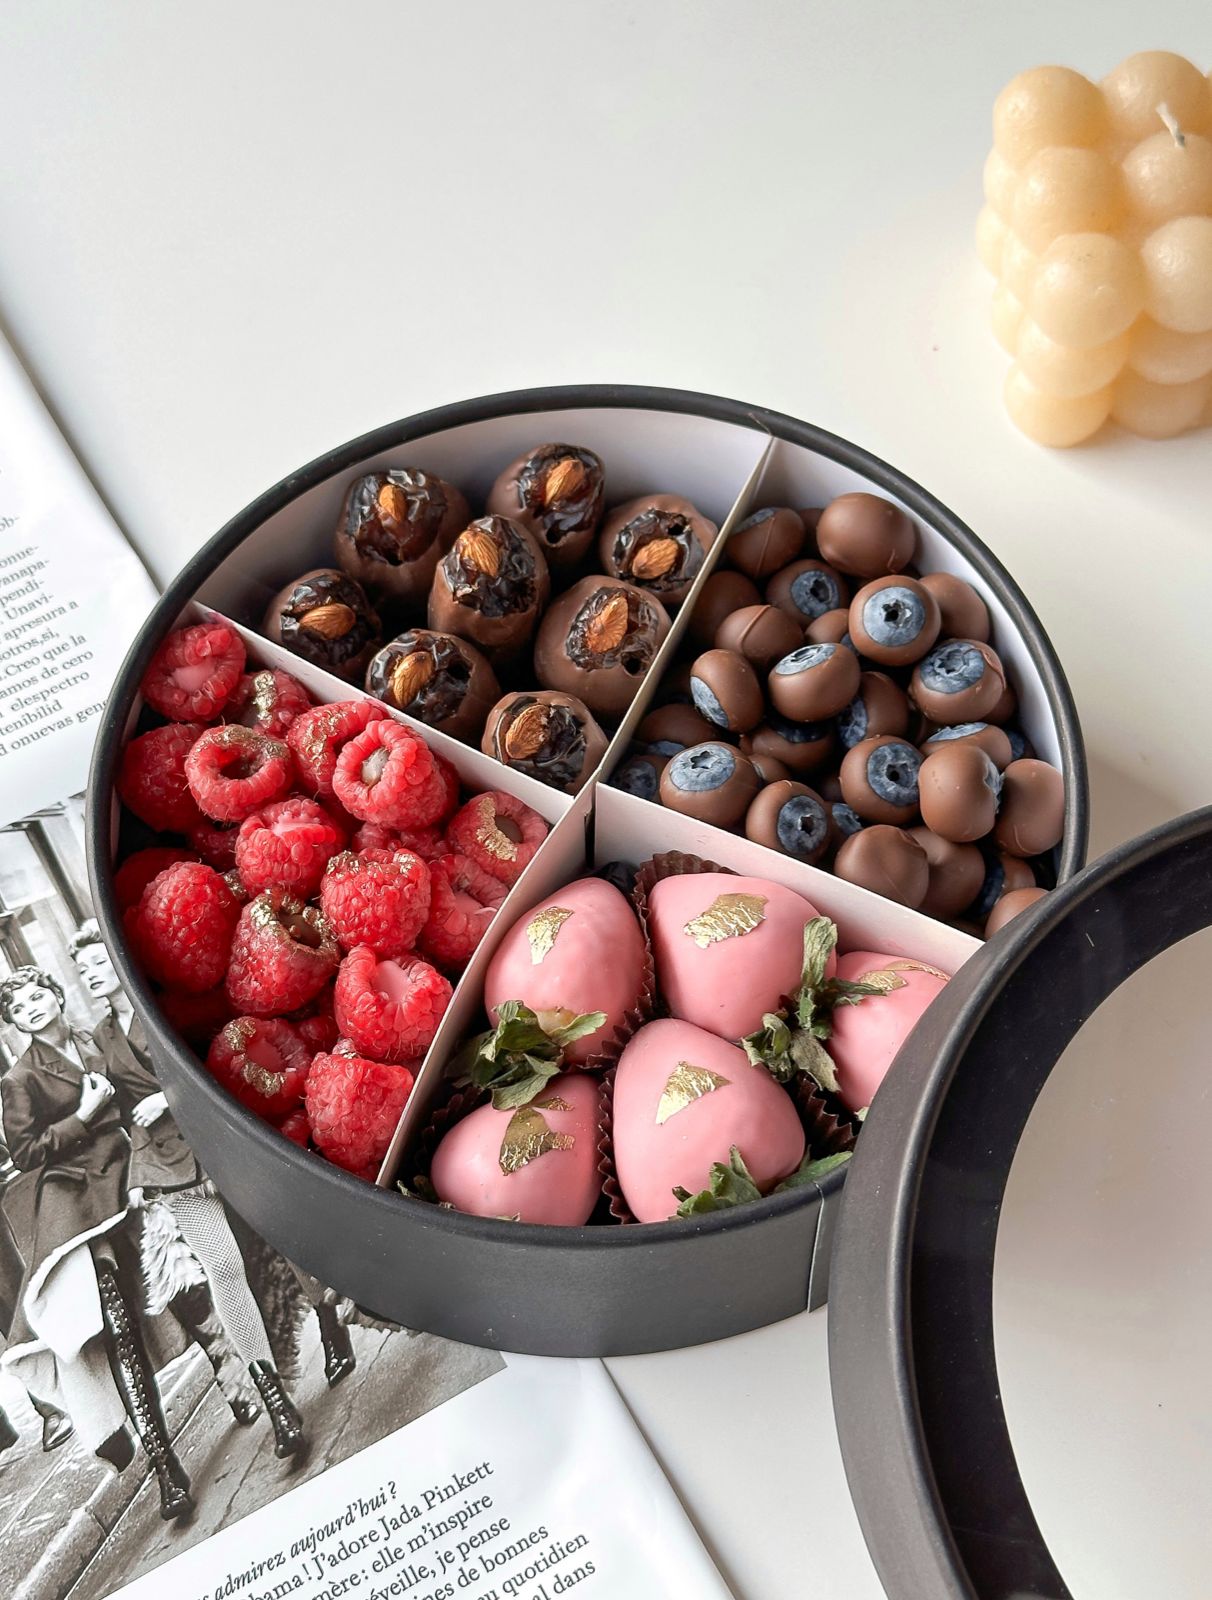 Фруктовый бокс "Амадеус" набор из клубники, голубики и фиников в шоколаде и свежей малины